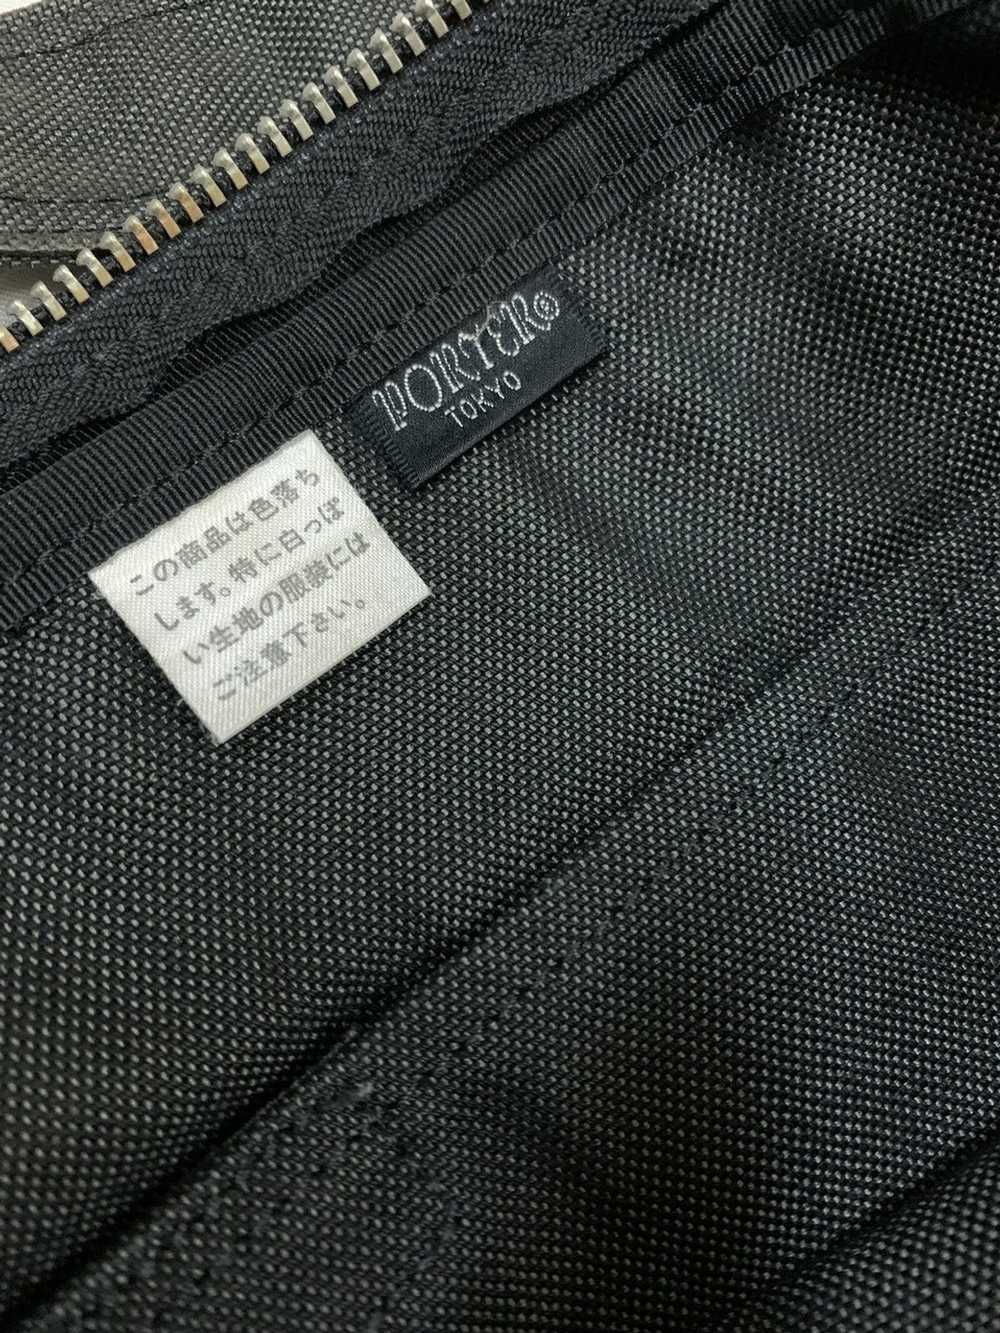 Japanese Brand × Porter × Vintage Porter Sling Bag - image 5